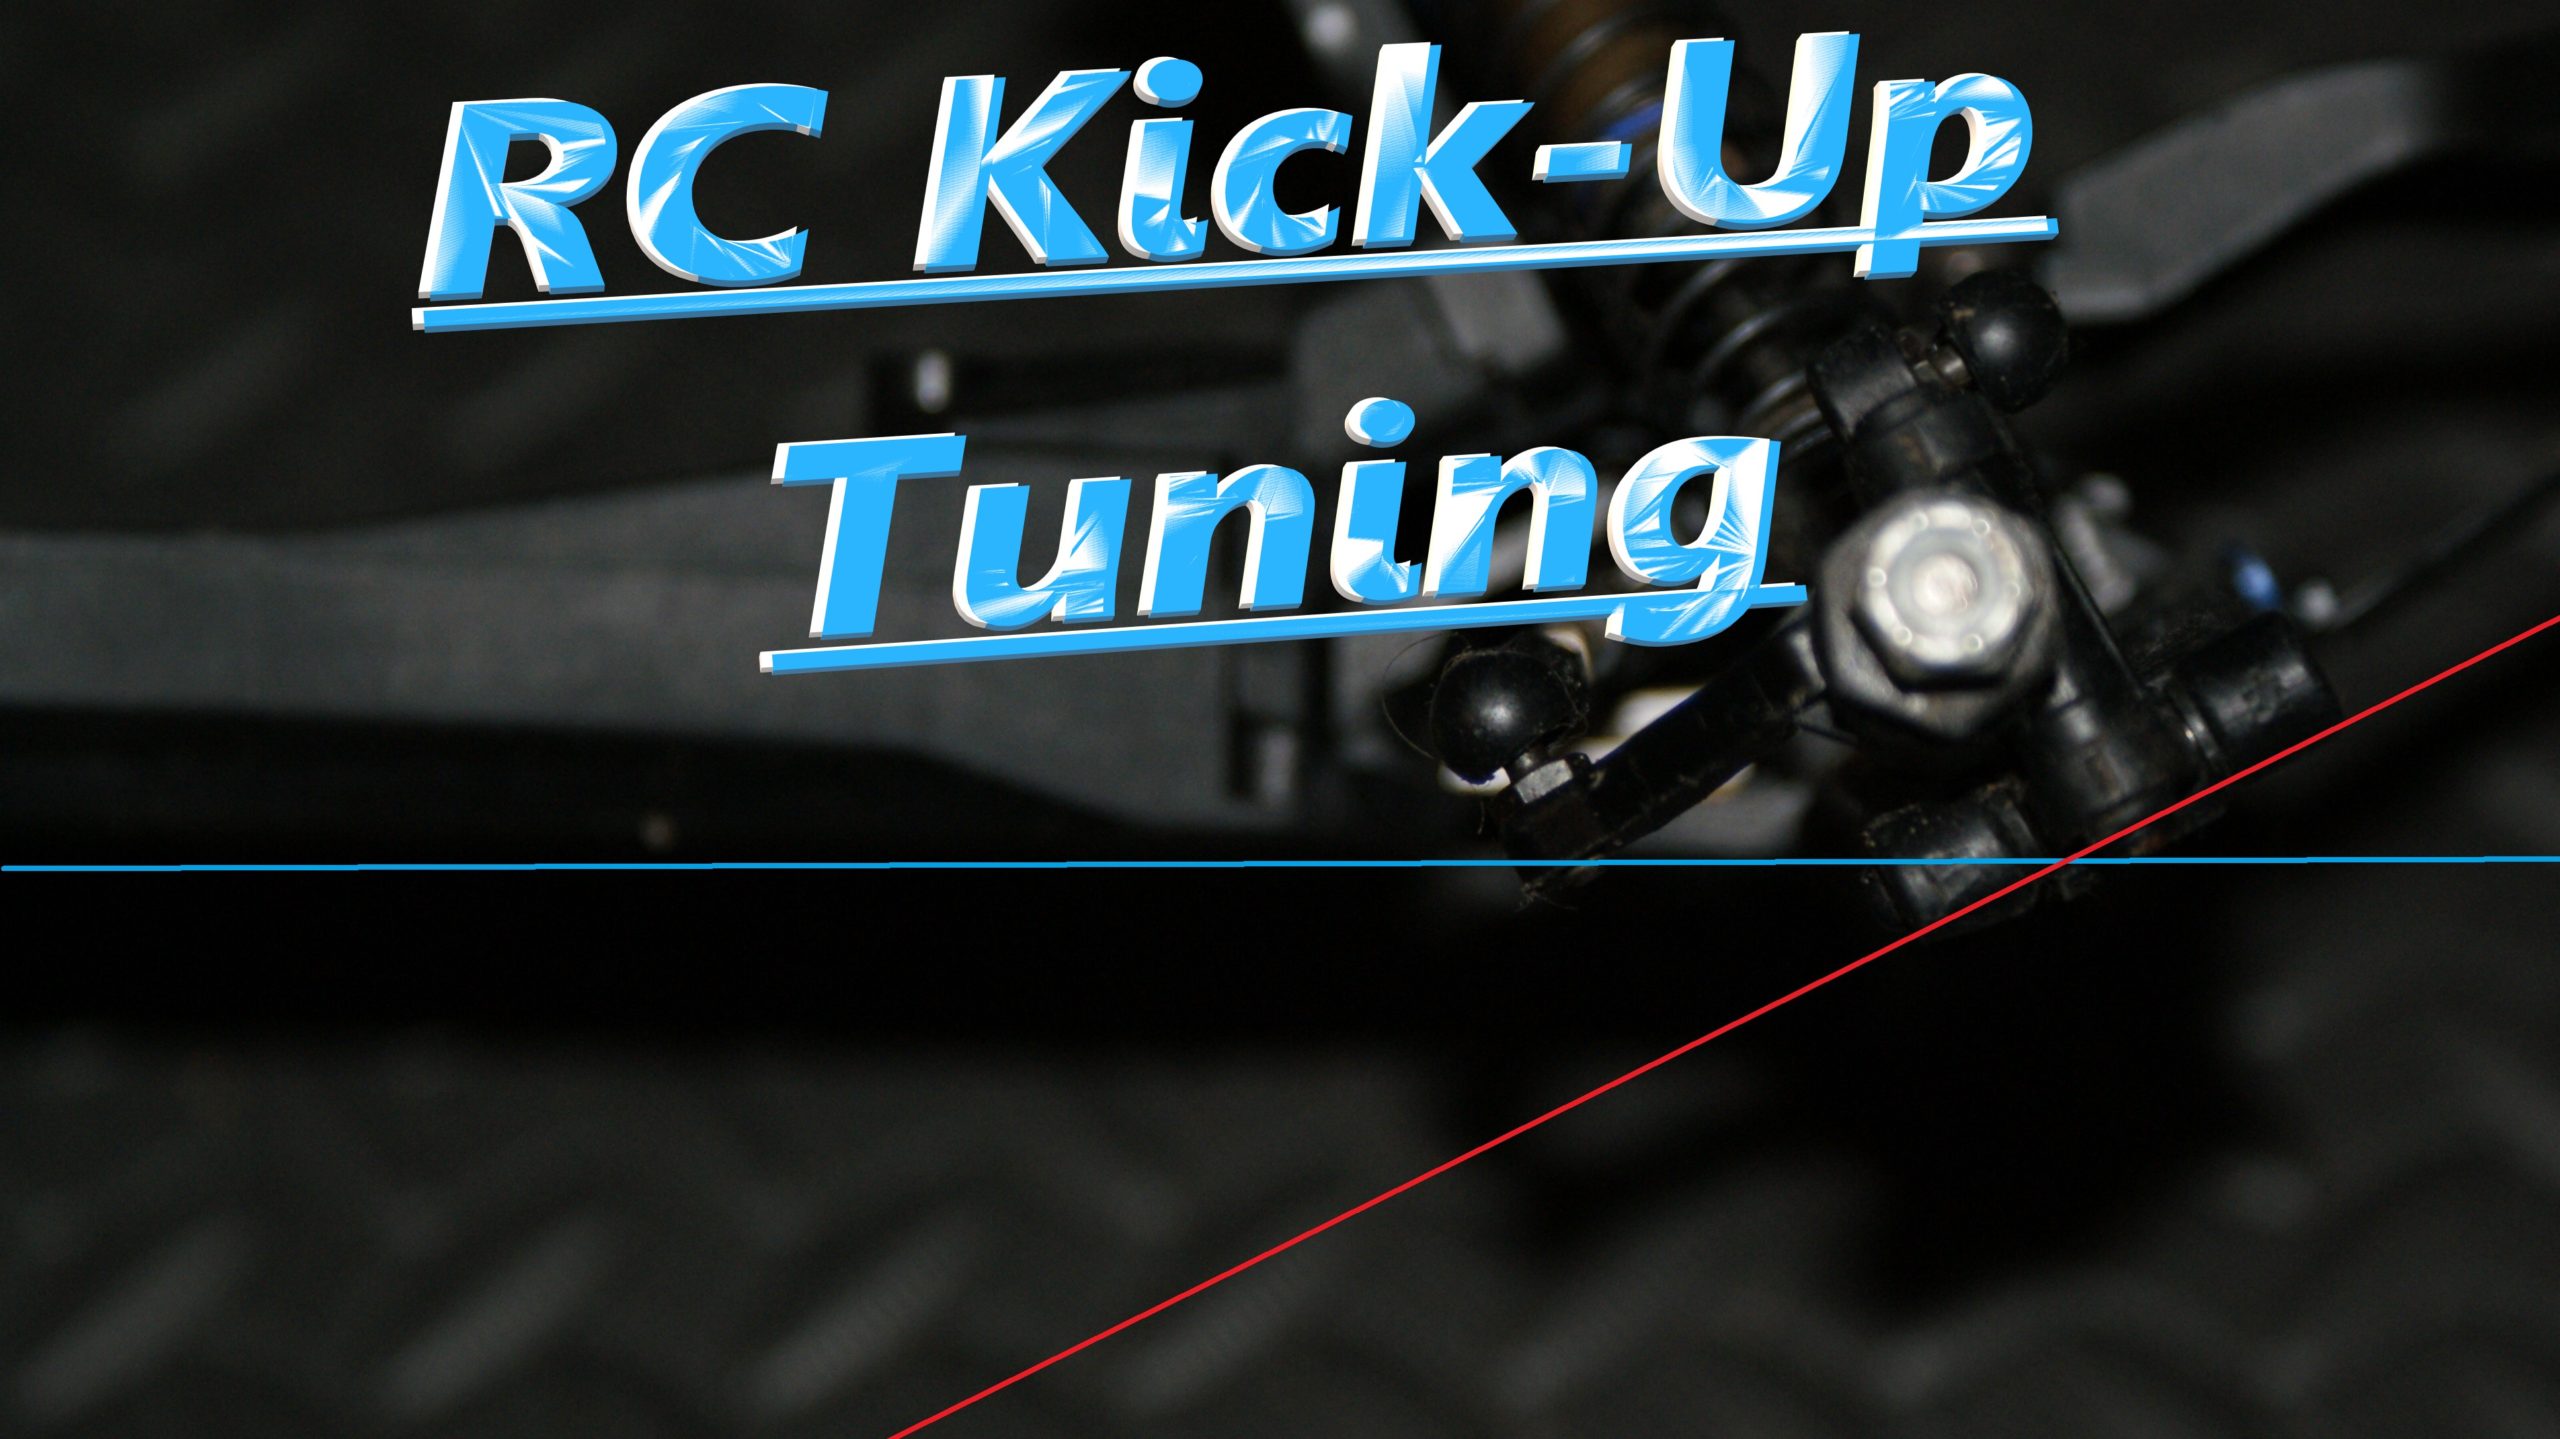 RC Kickup tuning